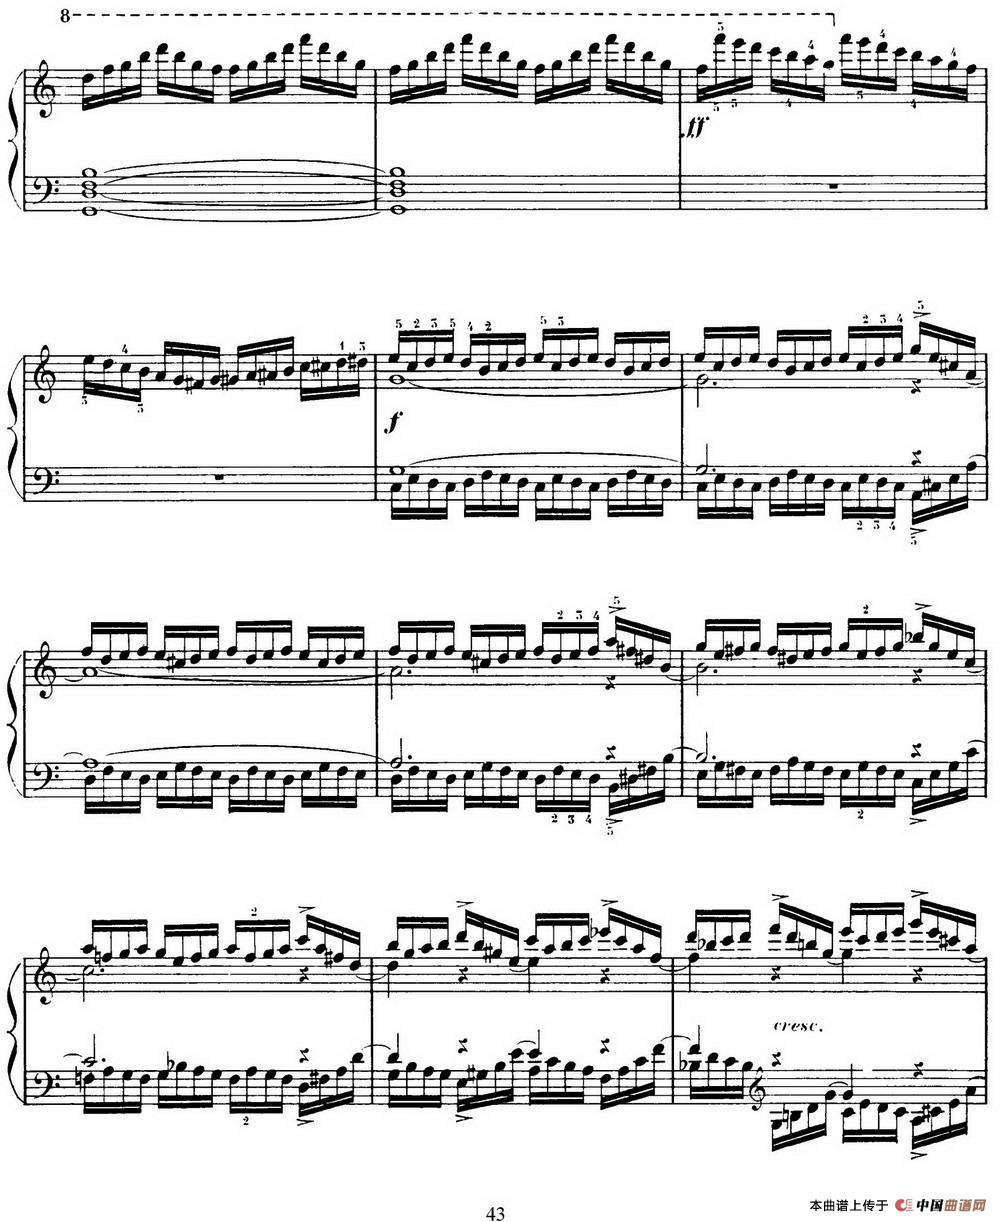 15 Etudes de Virtuosité Op.72 No.10（十五首钢琴练习曲之十）(1)_043.jpg